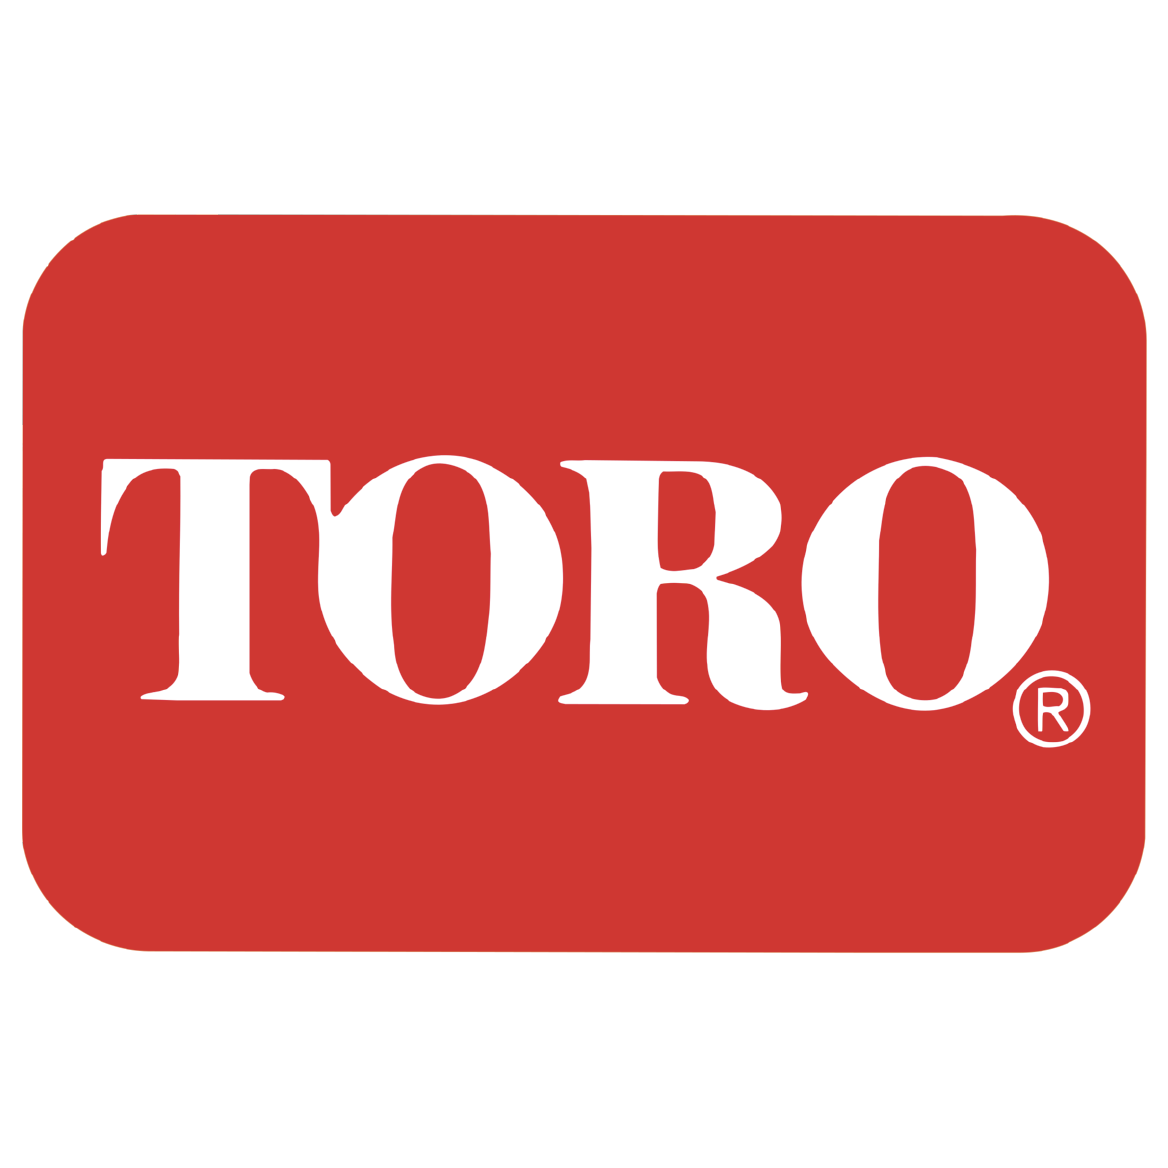 Toro logo.png